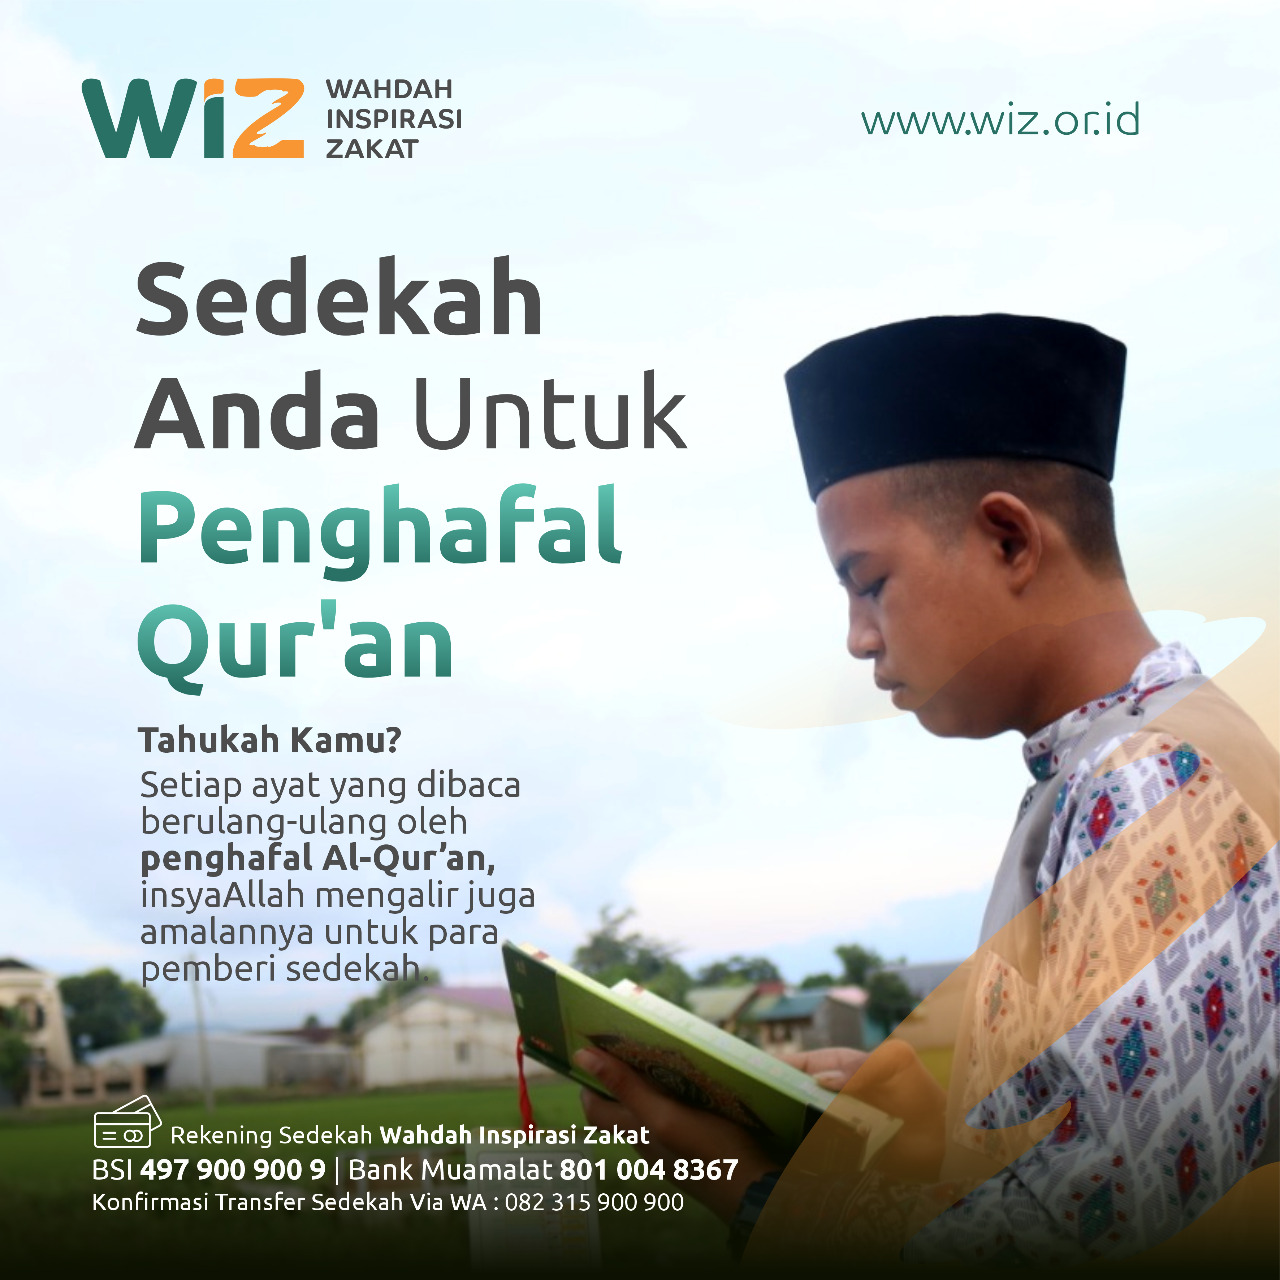 Sedekah Untuk Penghafal Quran Wahdah Inspirasi Zakat